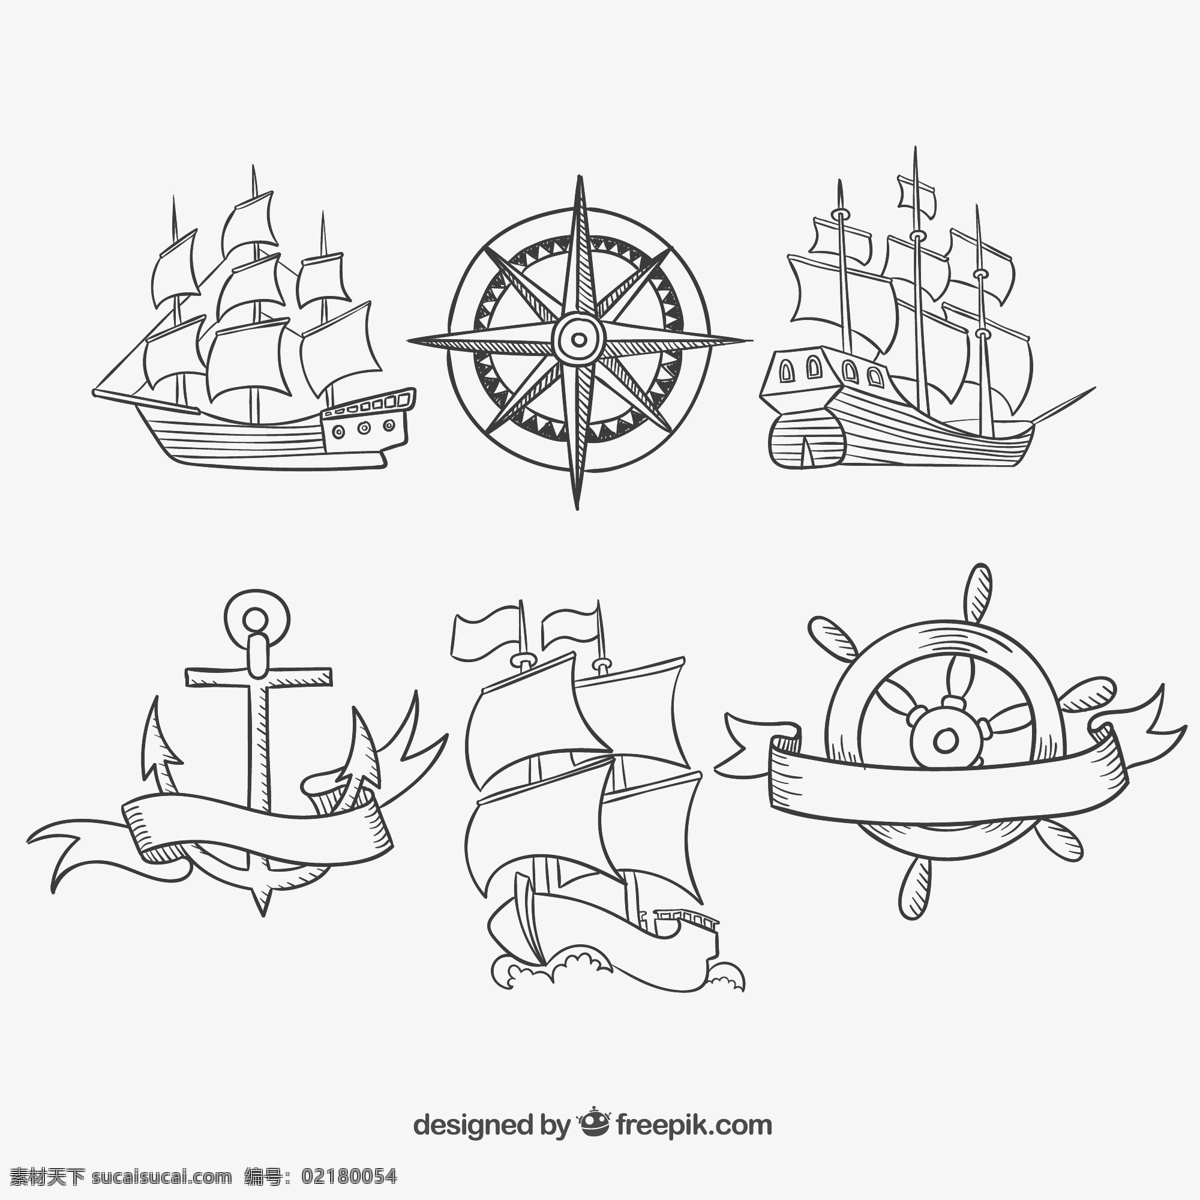 手绘老旧船舶 旅游 绘制 航海 海洋 冒险 帆船 抽纱 船舶 nautic 图标 高清 源文件